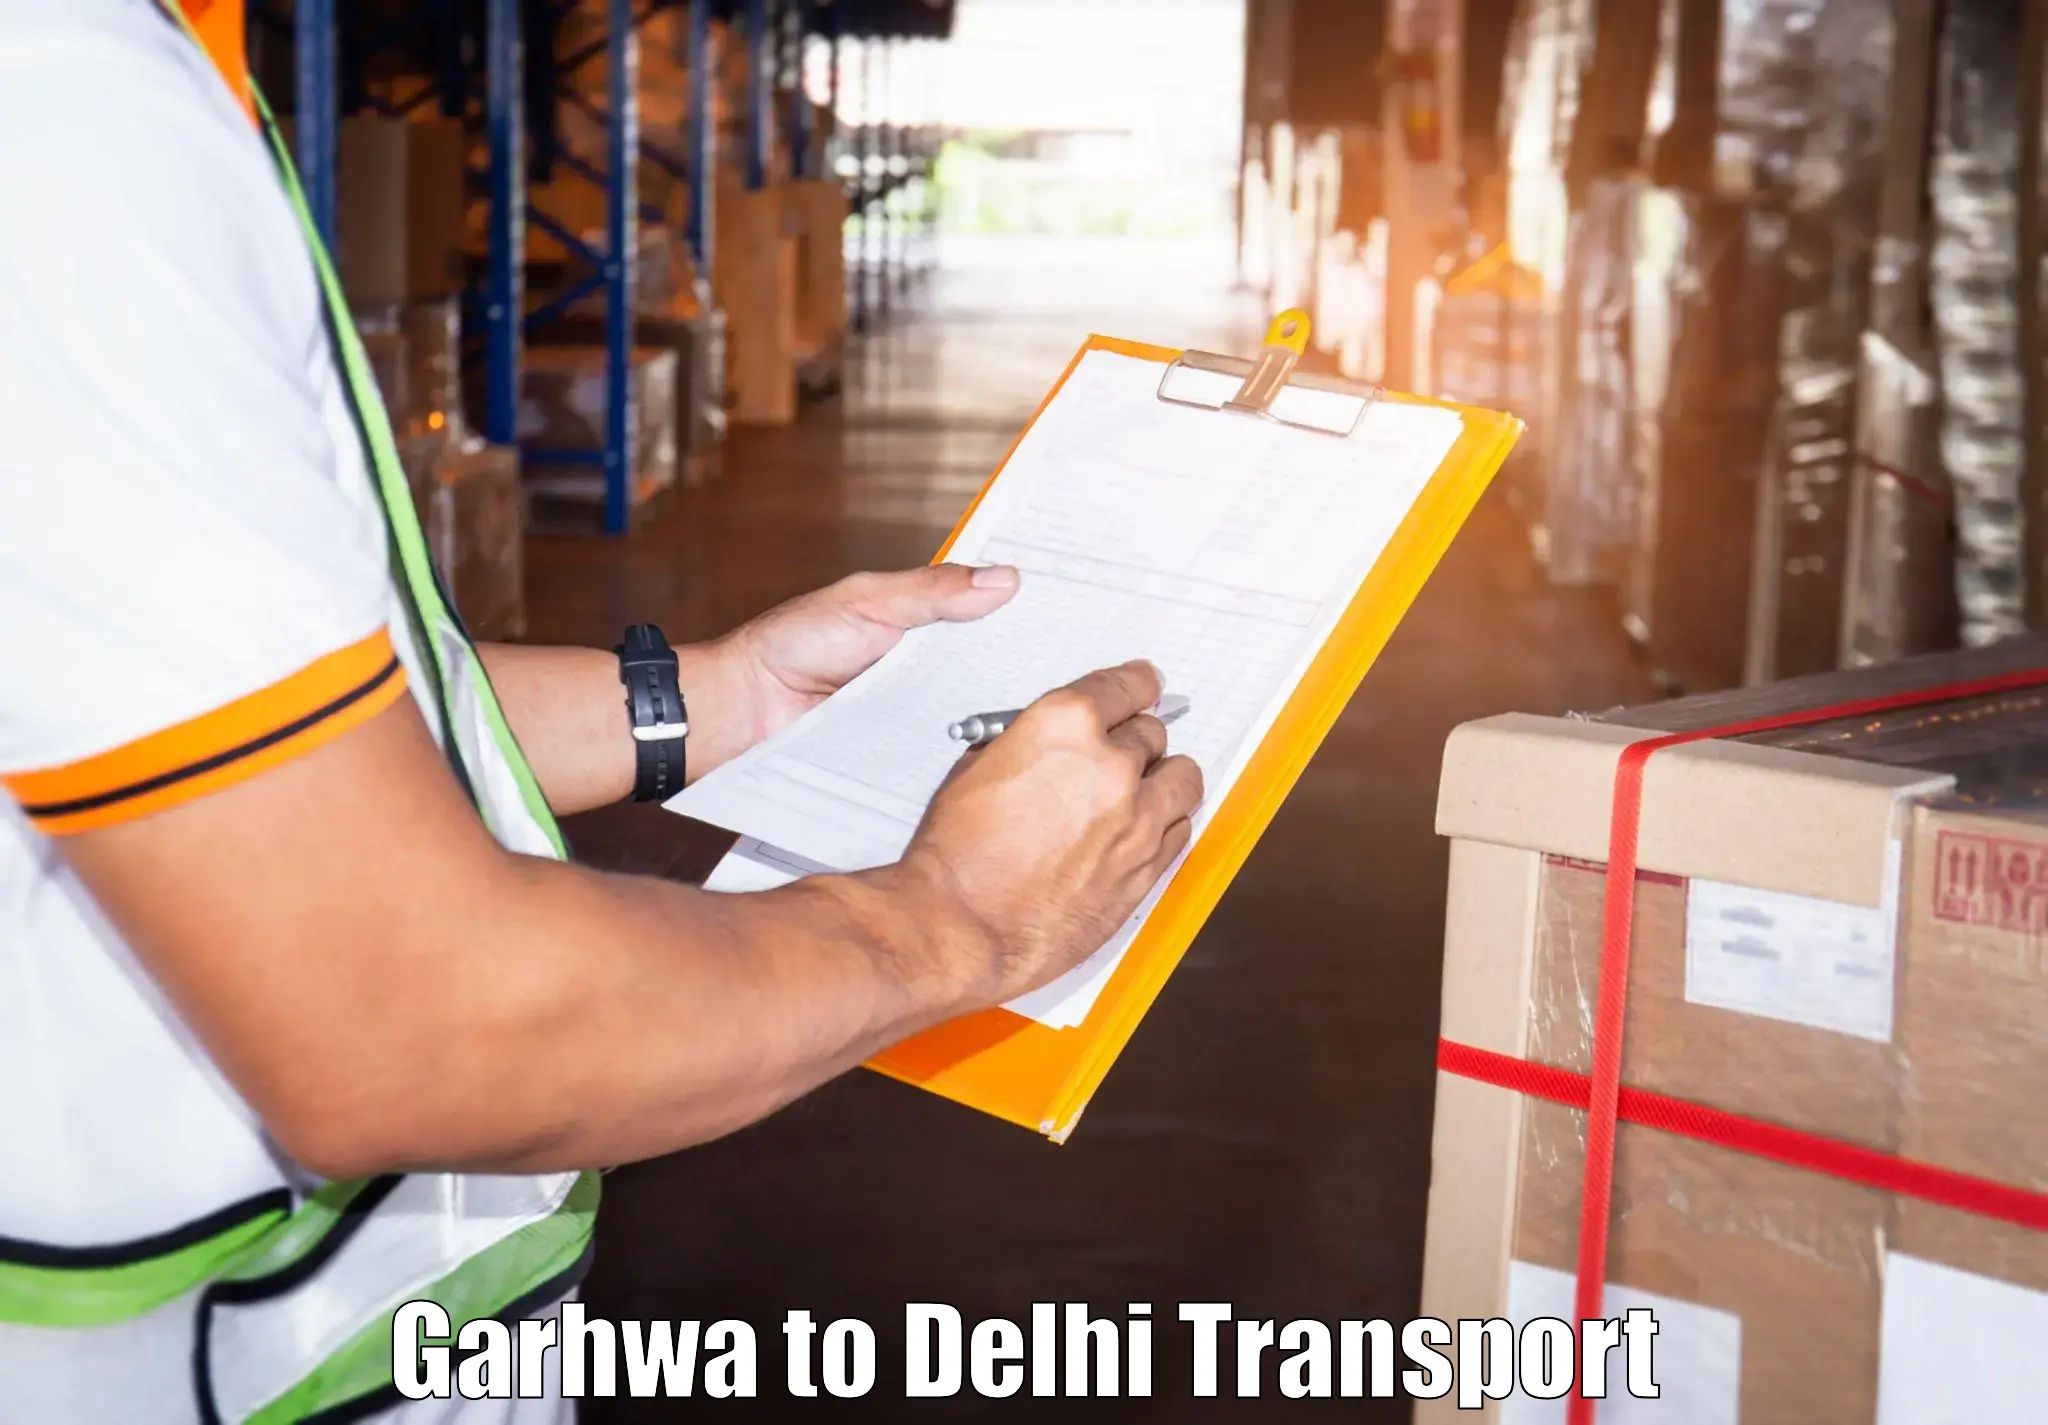 Furniture transport service Garhwa to Kalkaji